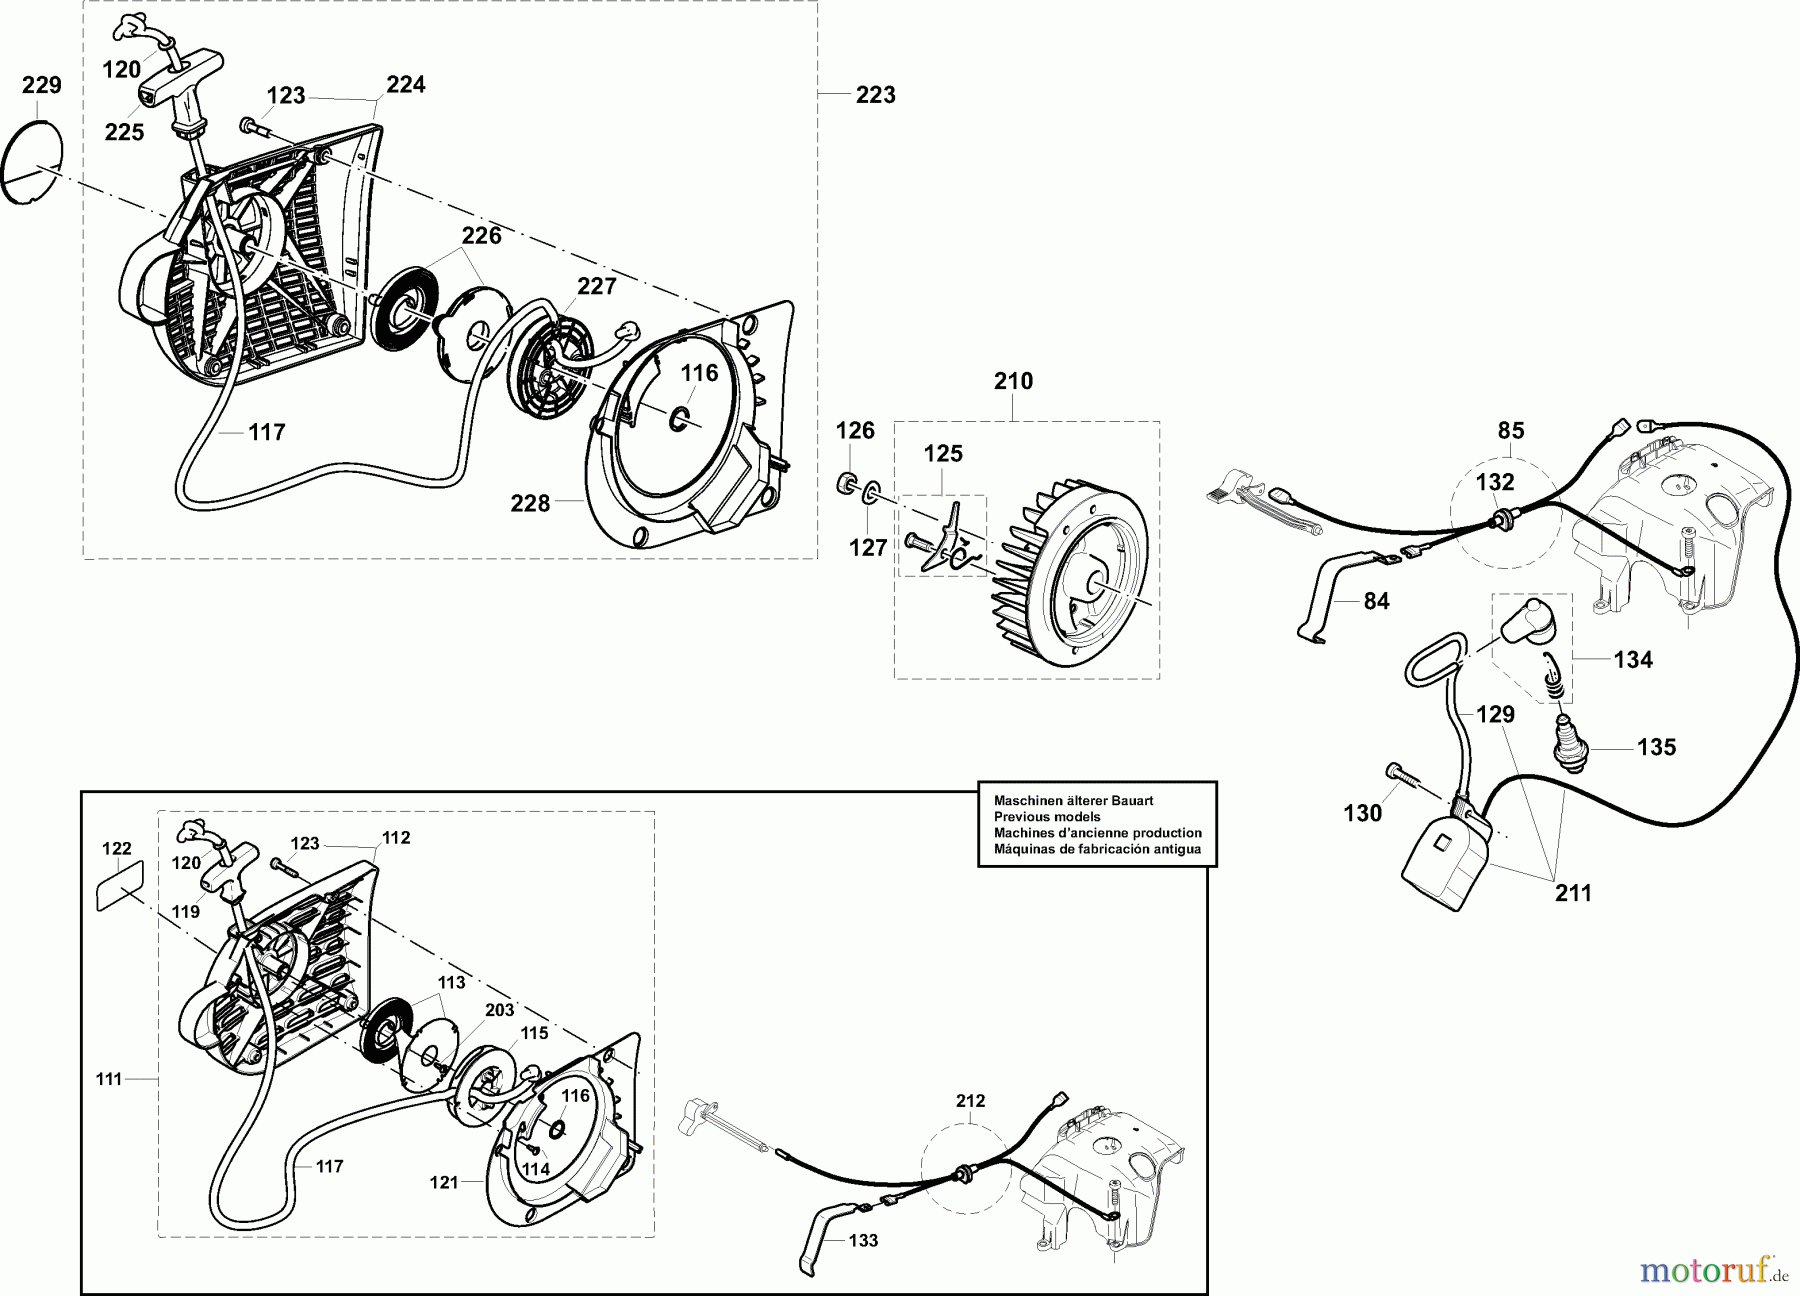  Dolmar Trennschleifer Benzin PC-7435 (USA) 5  Anwerfvorrichtung, Magnetzünder